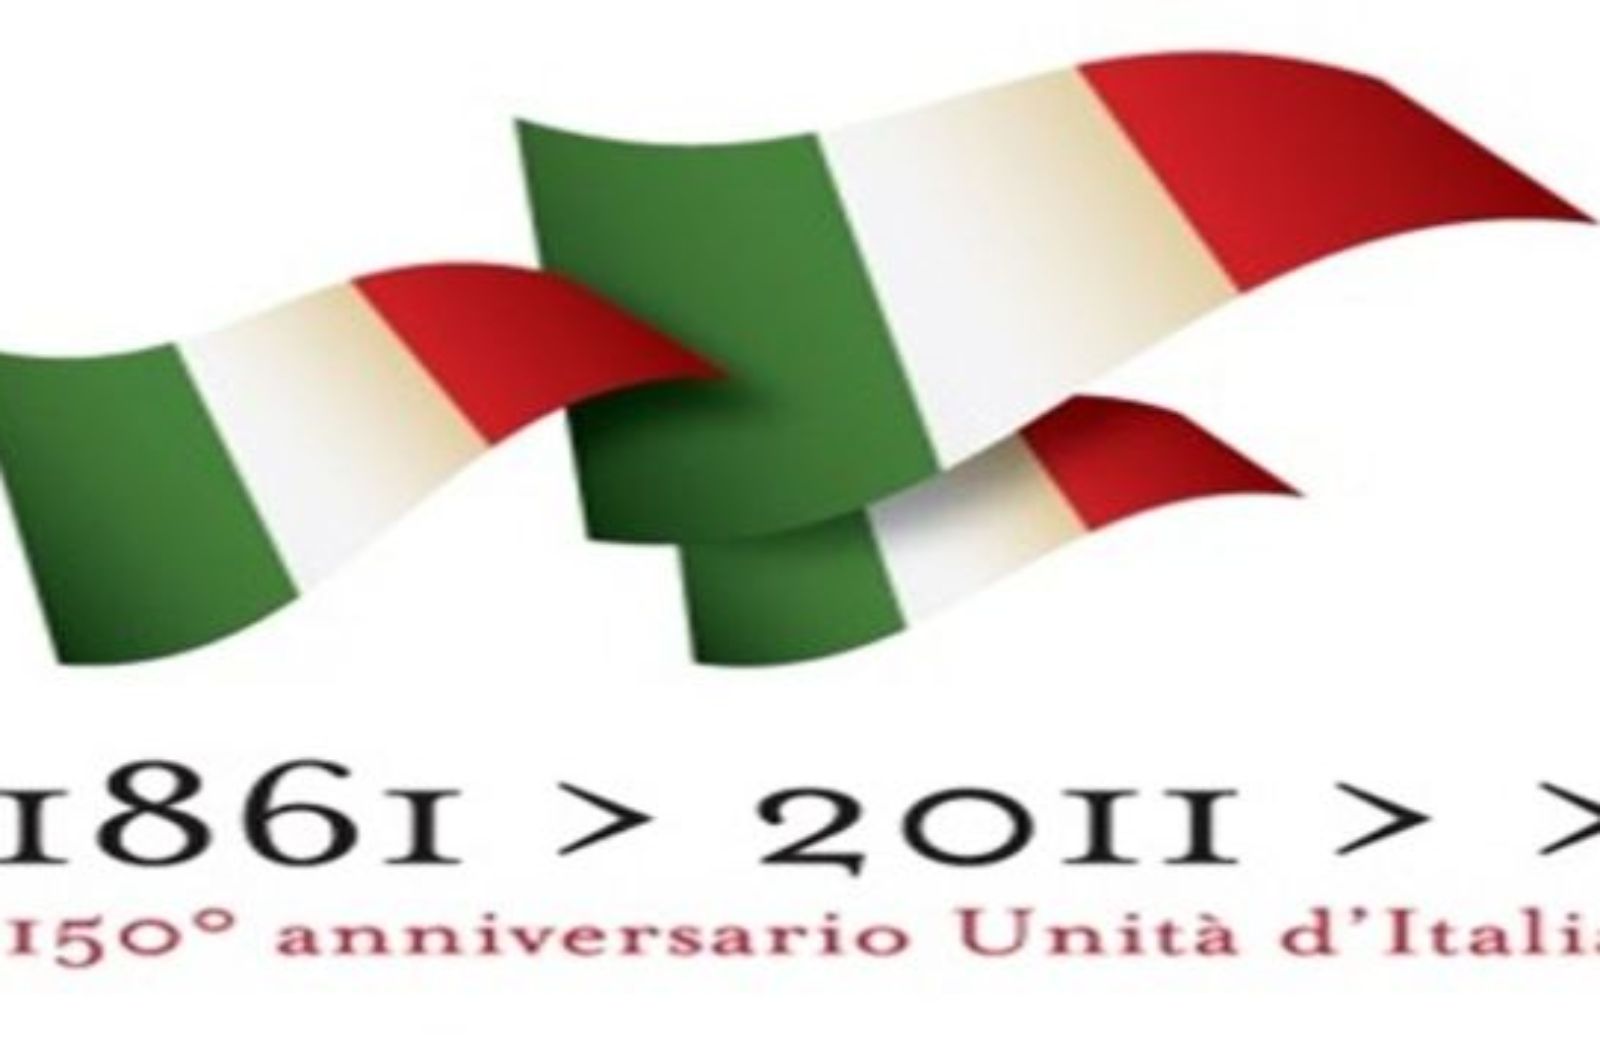 Come festeggiare i 150 anni dell'Unità d'Italia insieme ai bambini